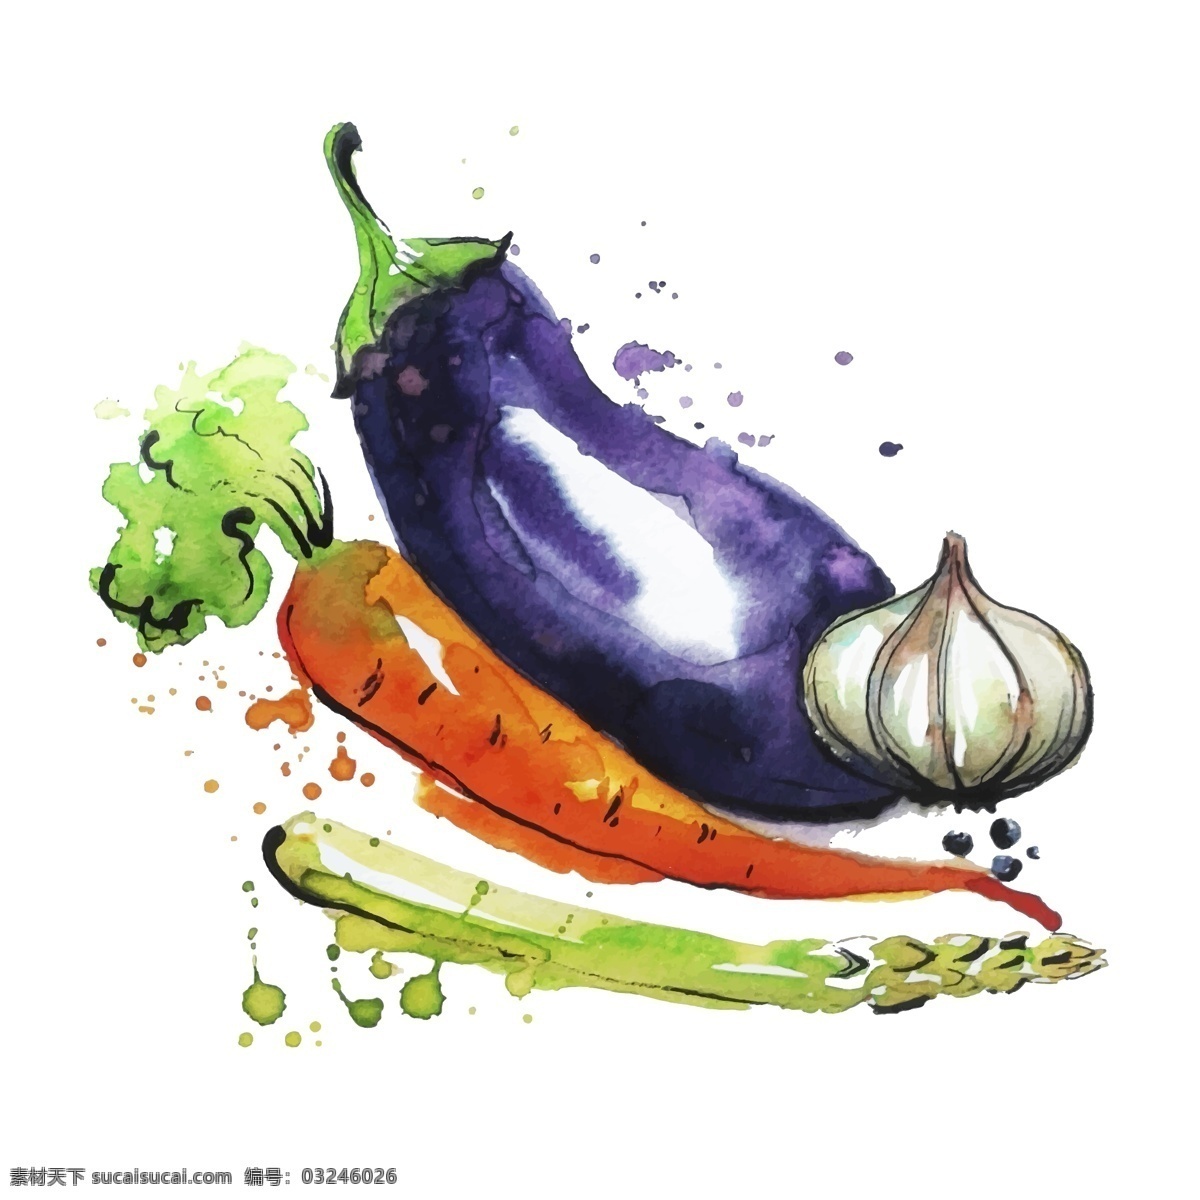 水彩 绘 蔬菜 插画 水彩绘 胡萝卜 茄子 大蒜 手绘